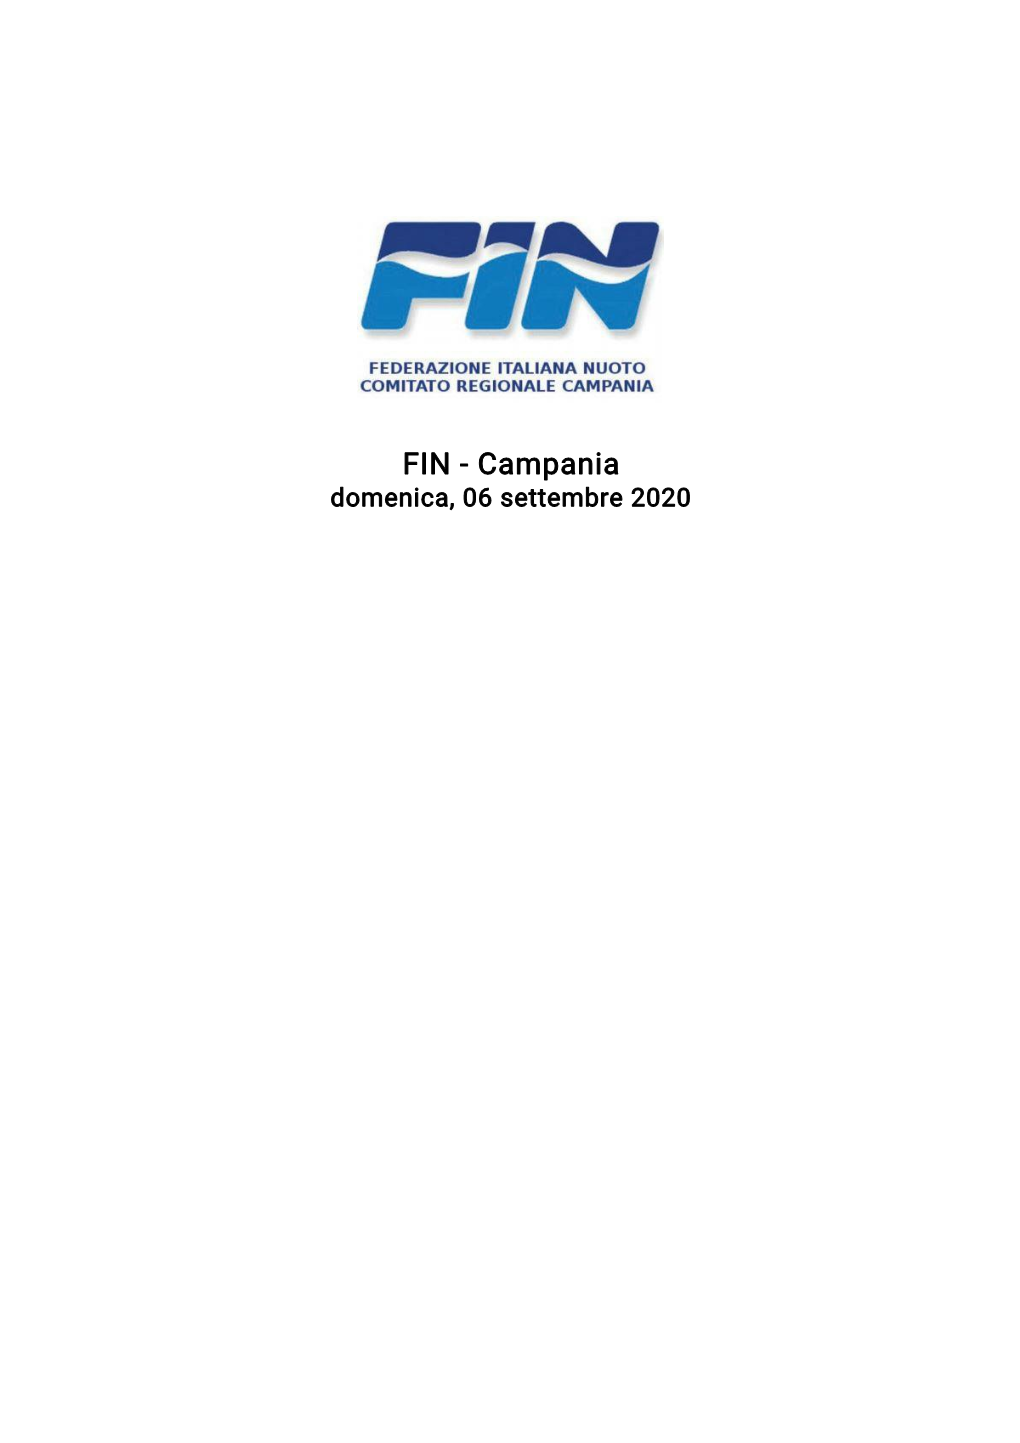 FIN - Campania Domenica, 06 Settembre 2020 FIN - Campania Domenica, 06 Settembre 2020